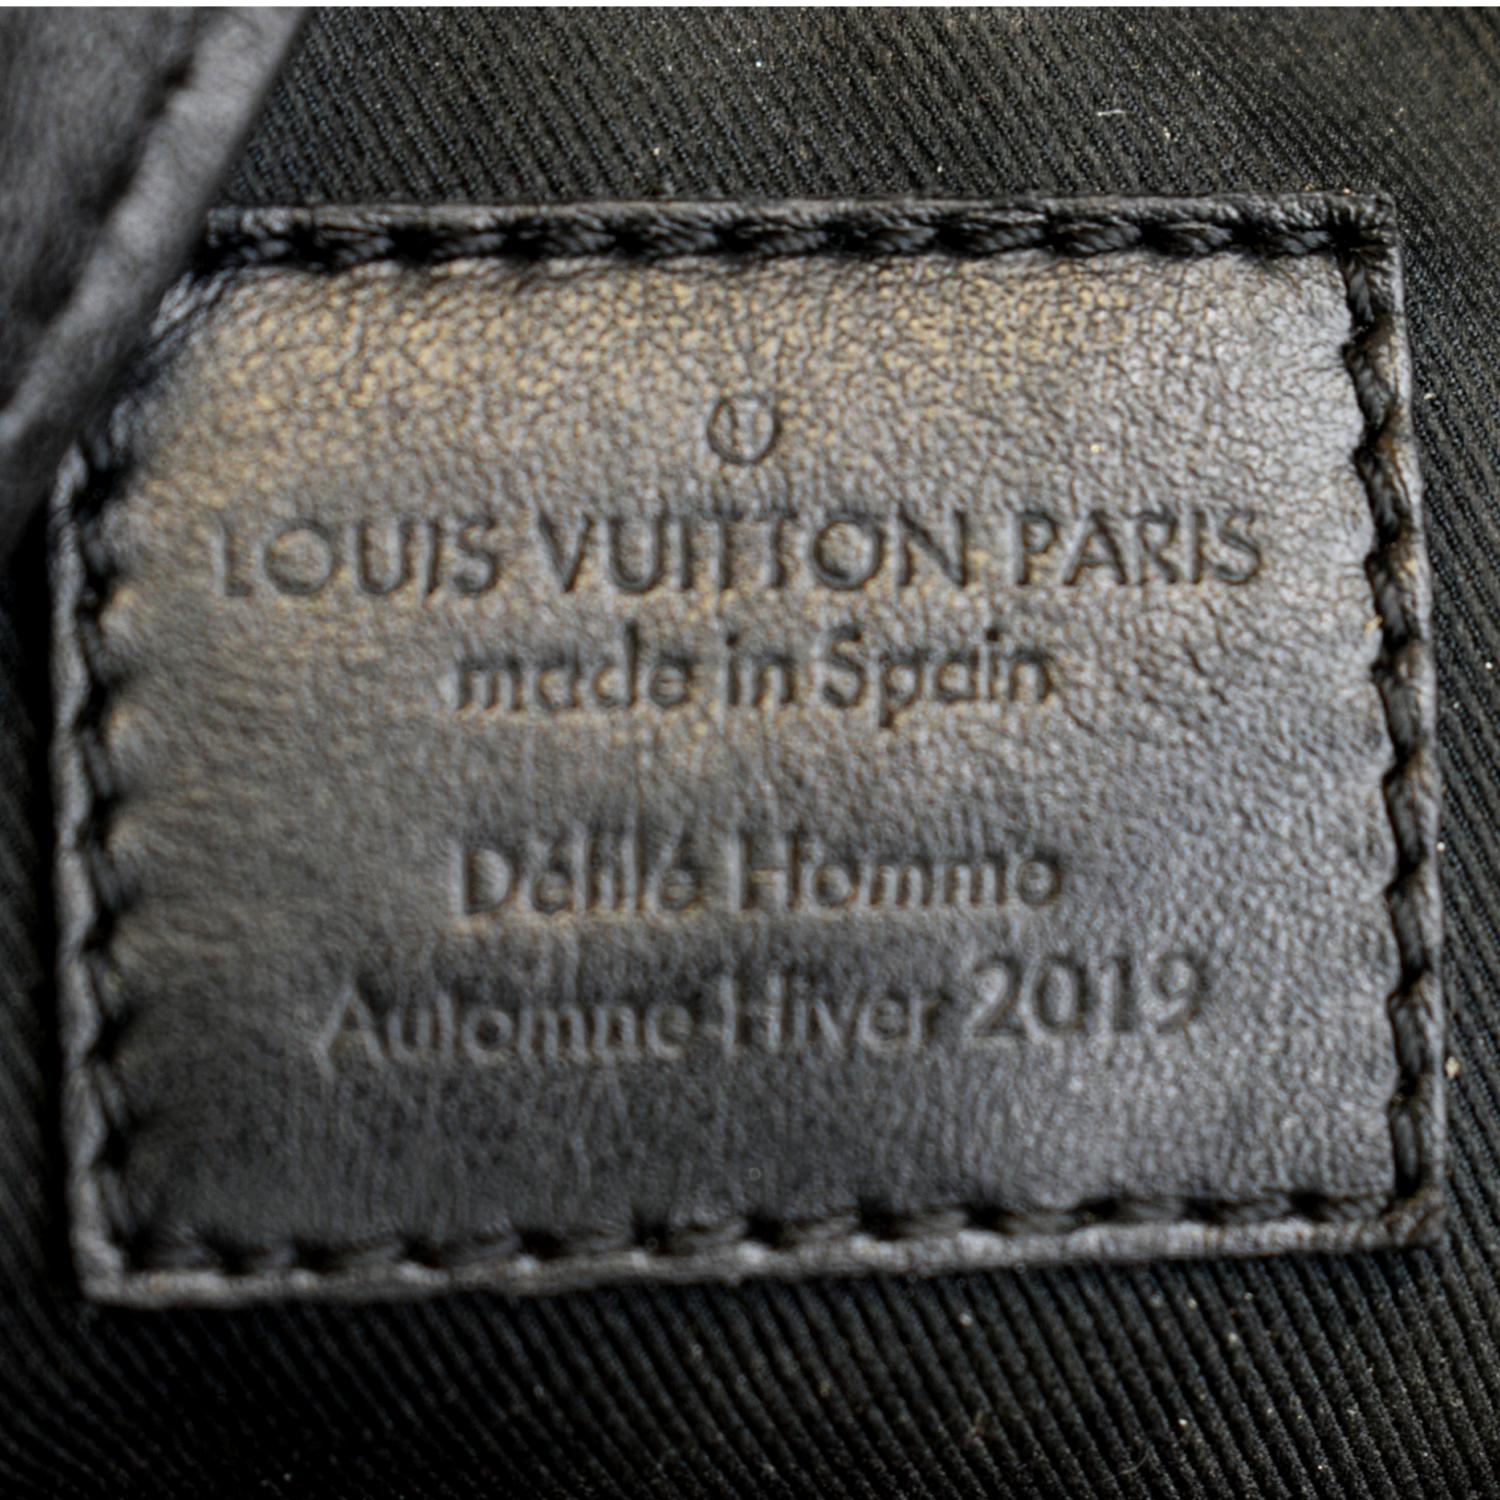 Louis Vuitton collection homme automne hiver 2012